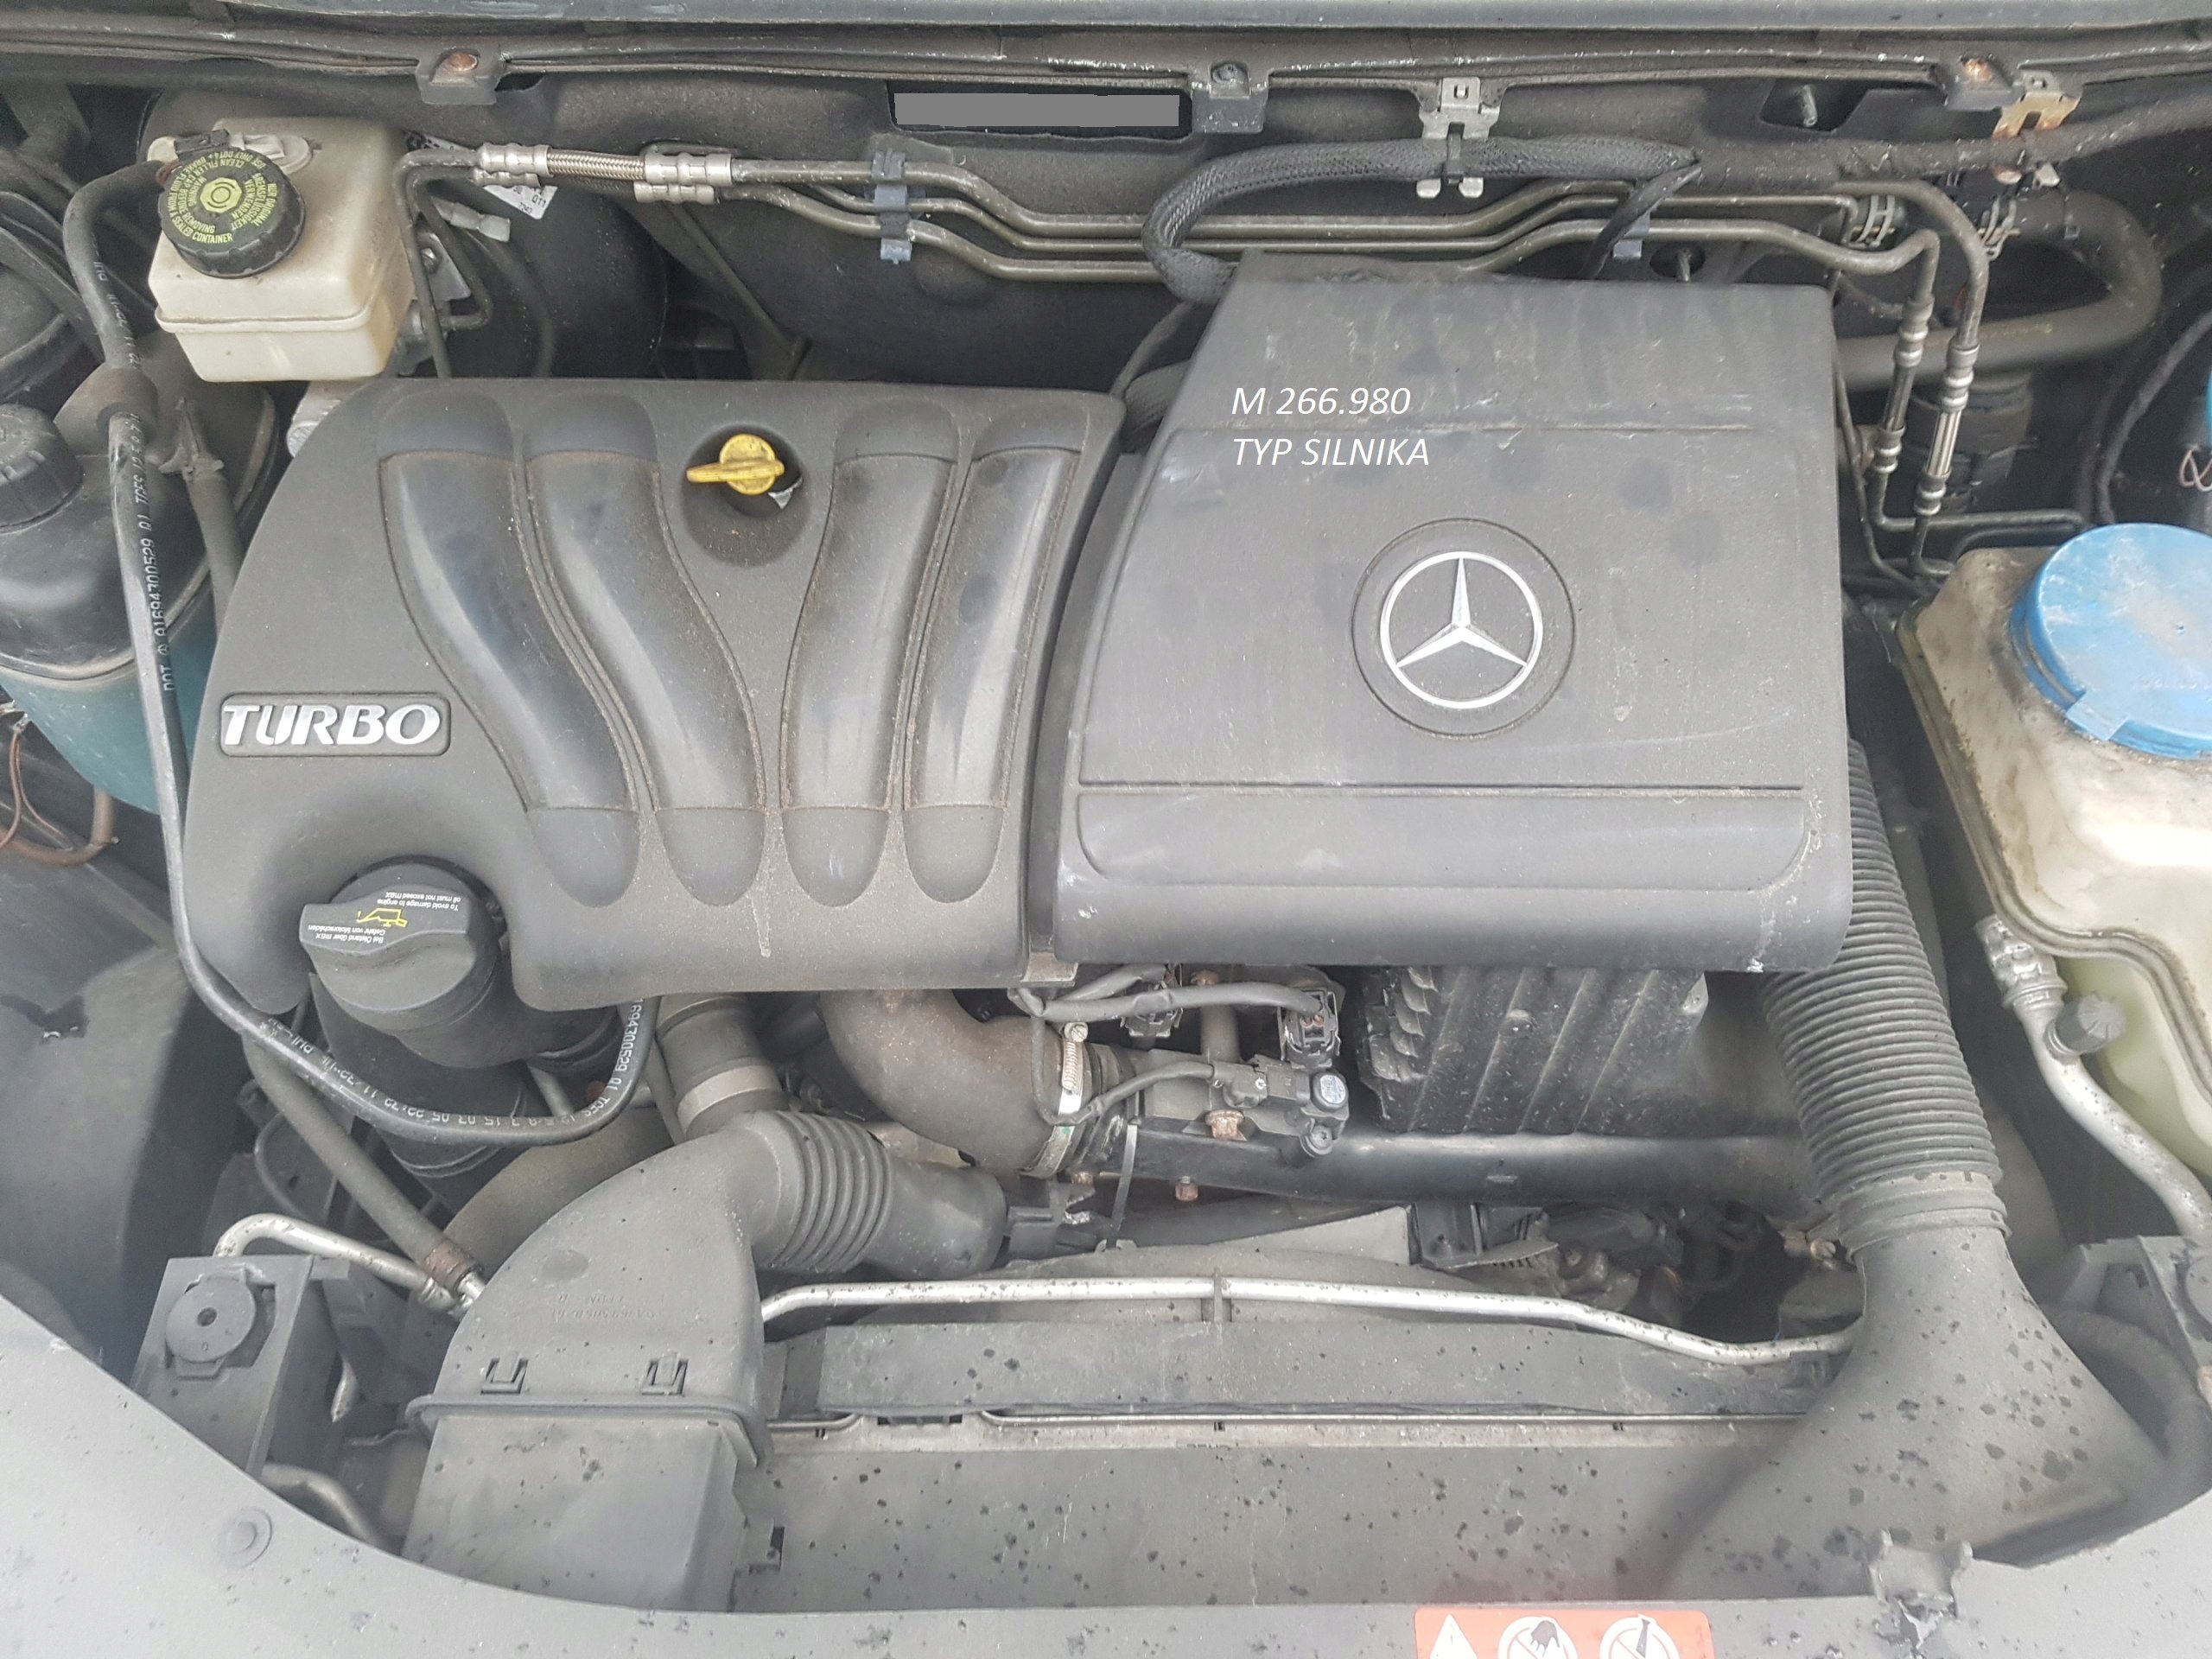 Mercedes-Benz M (двигатель) — Википедия